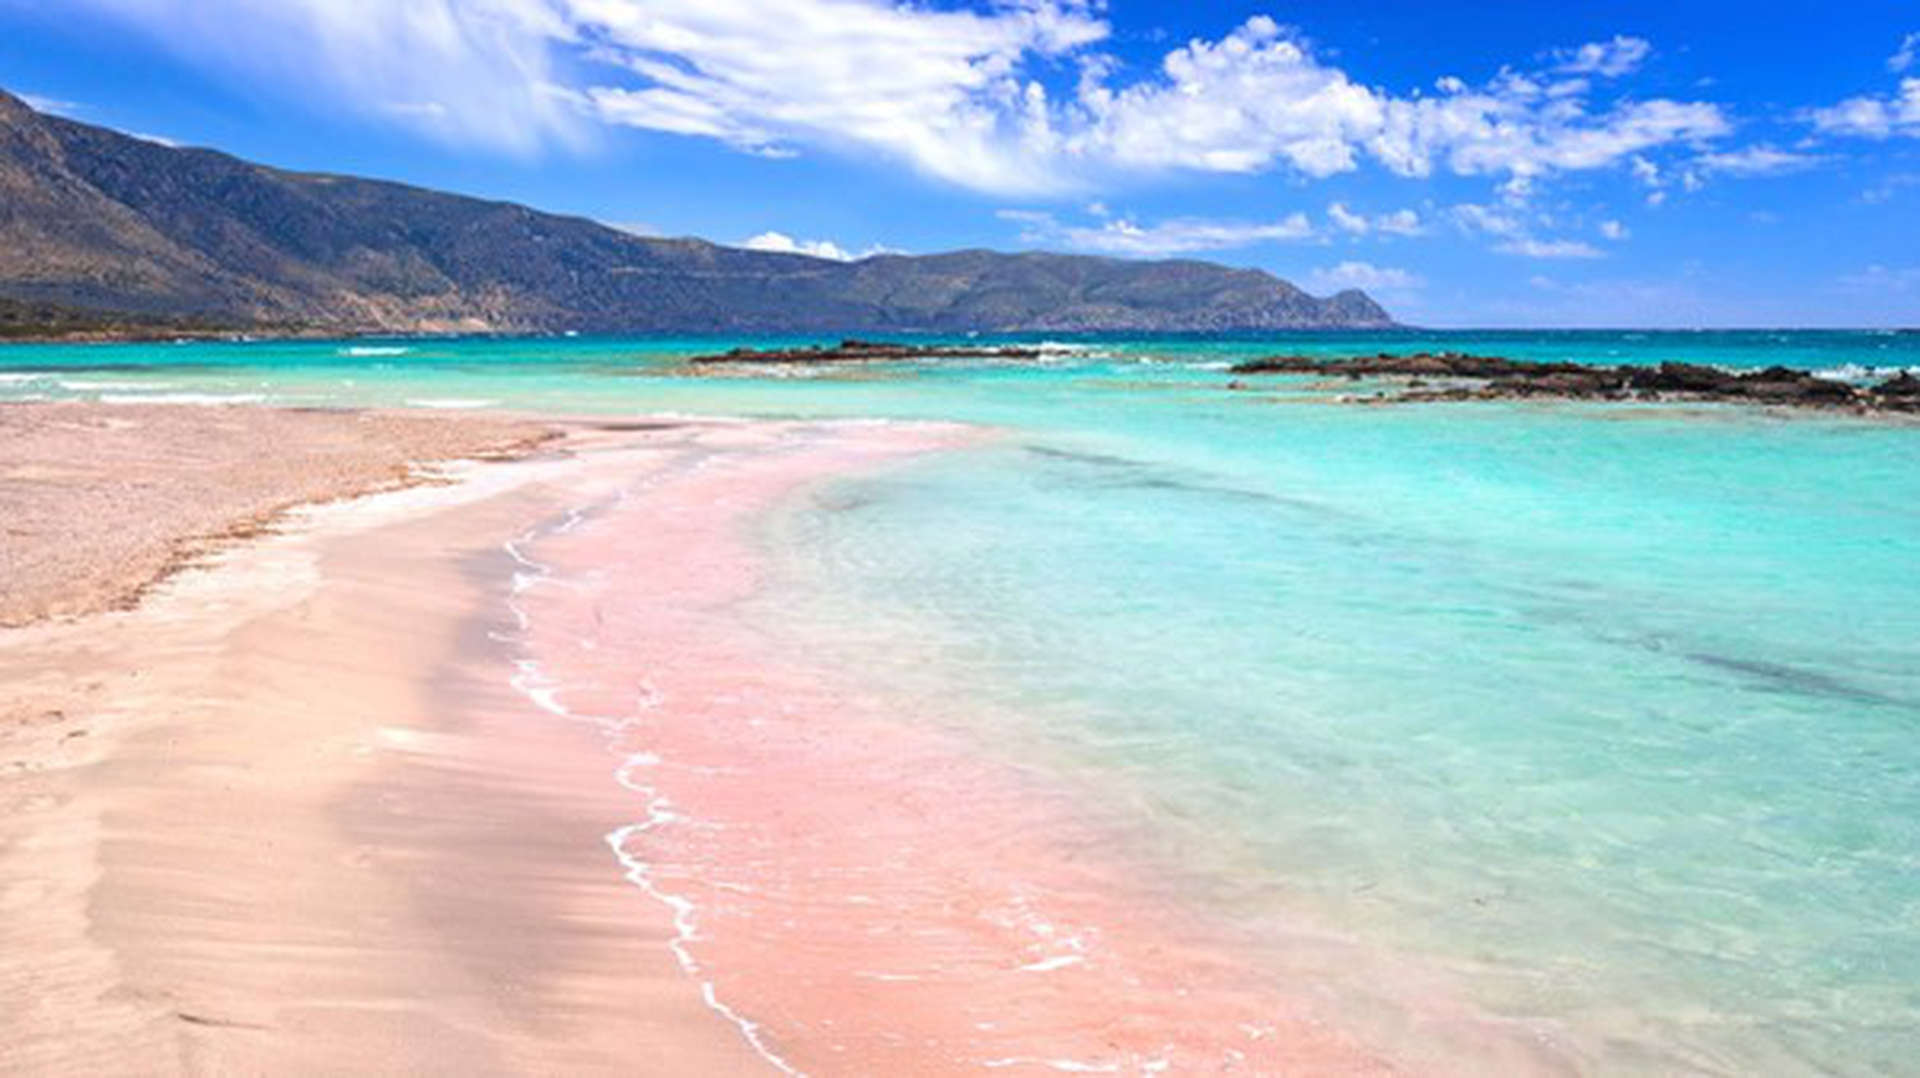 Elafinisi Strand auf der Insel Kreta in Griechenland. Ein rosafarbener Strand der von Türkisem Wasser eingesäumt wird, mit Bergen im Hintergrund.